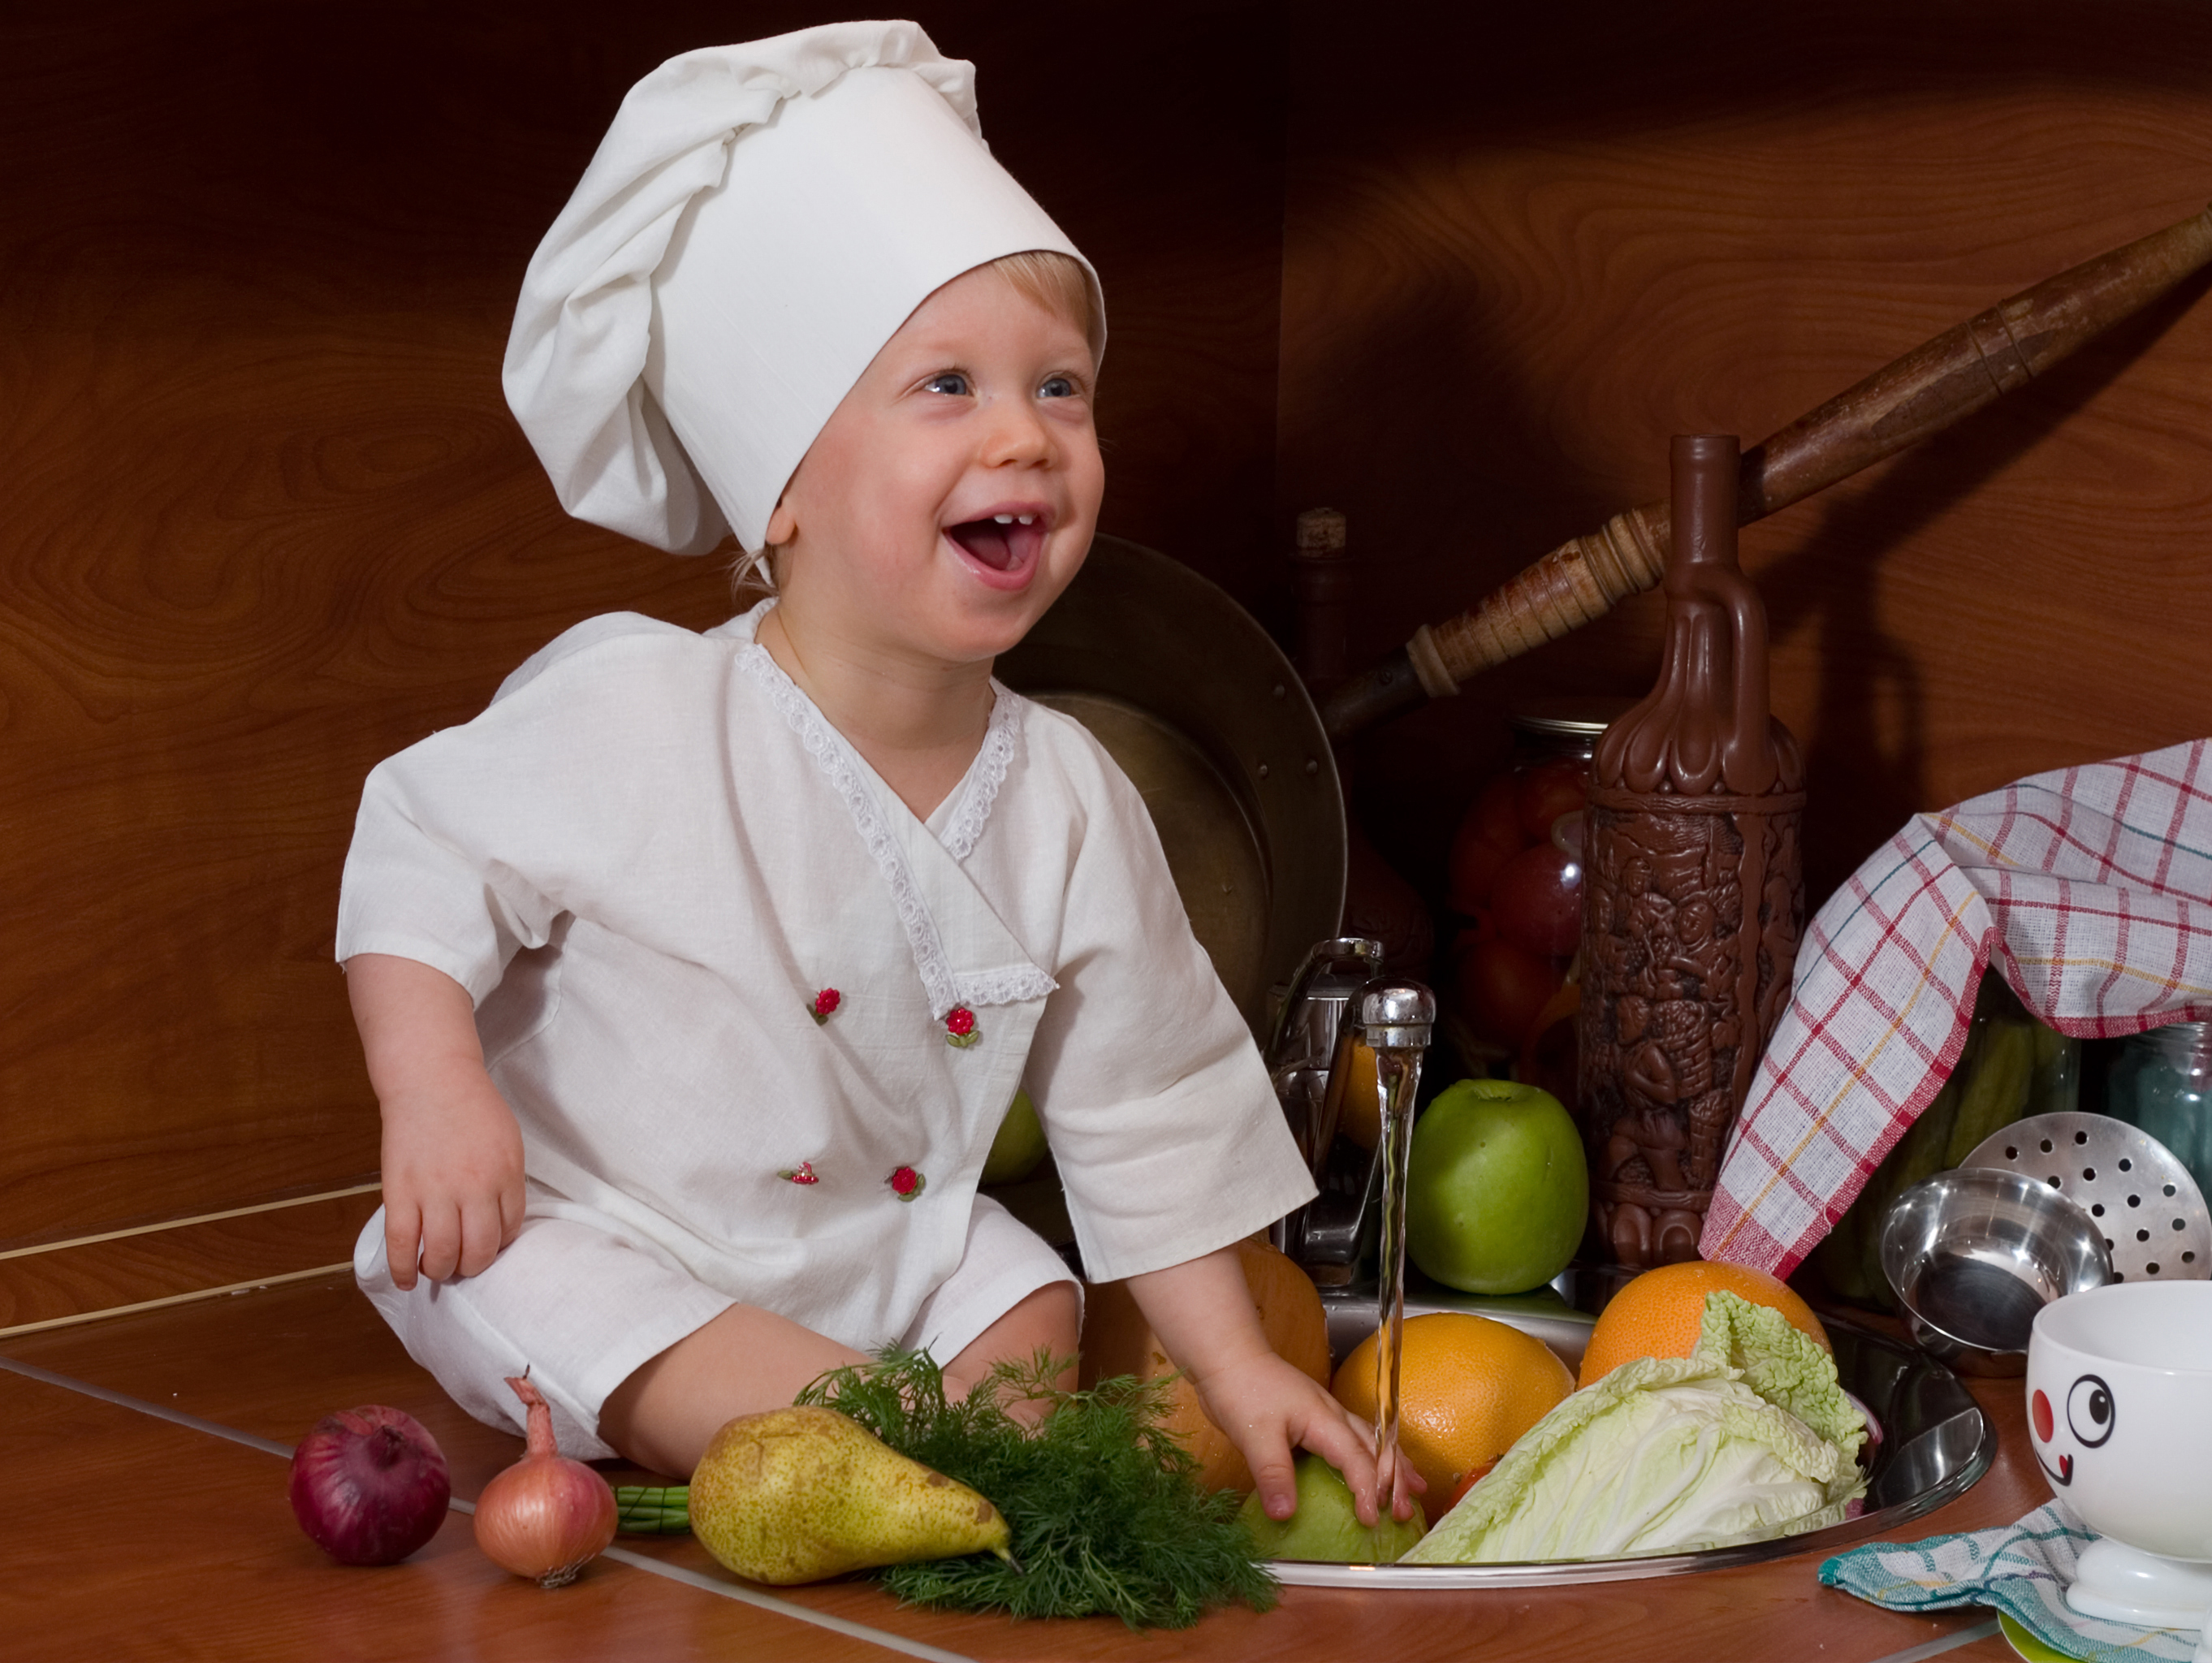 Приготовление еды детьми. Кухня для детей. Маленький повар. Повар фото для детей. Дети поварята.